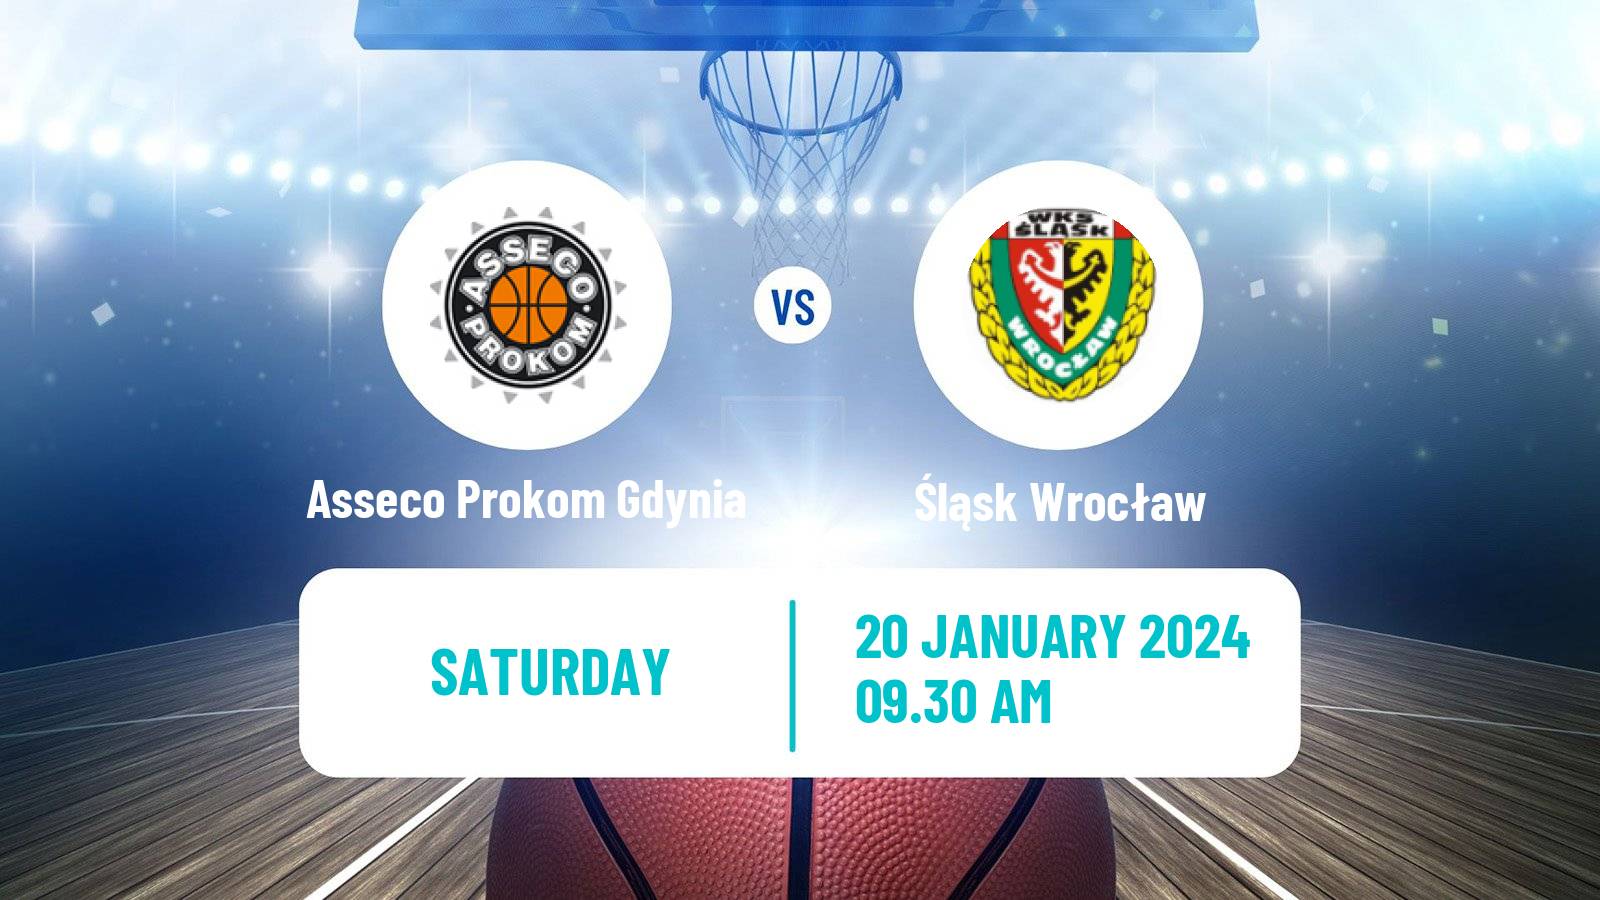 Basketball Polish Basket Liga Asseco Prokom Gdynia - Śląsk Wrocław